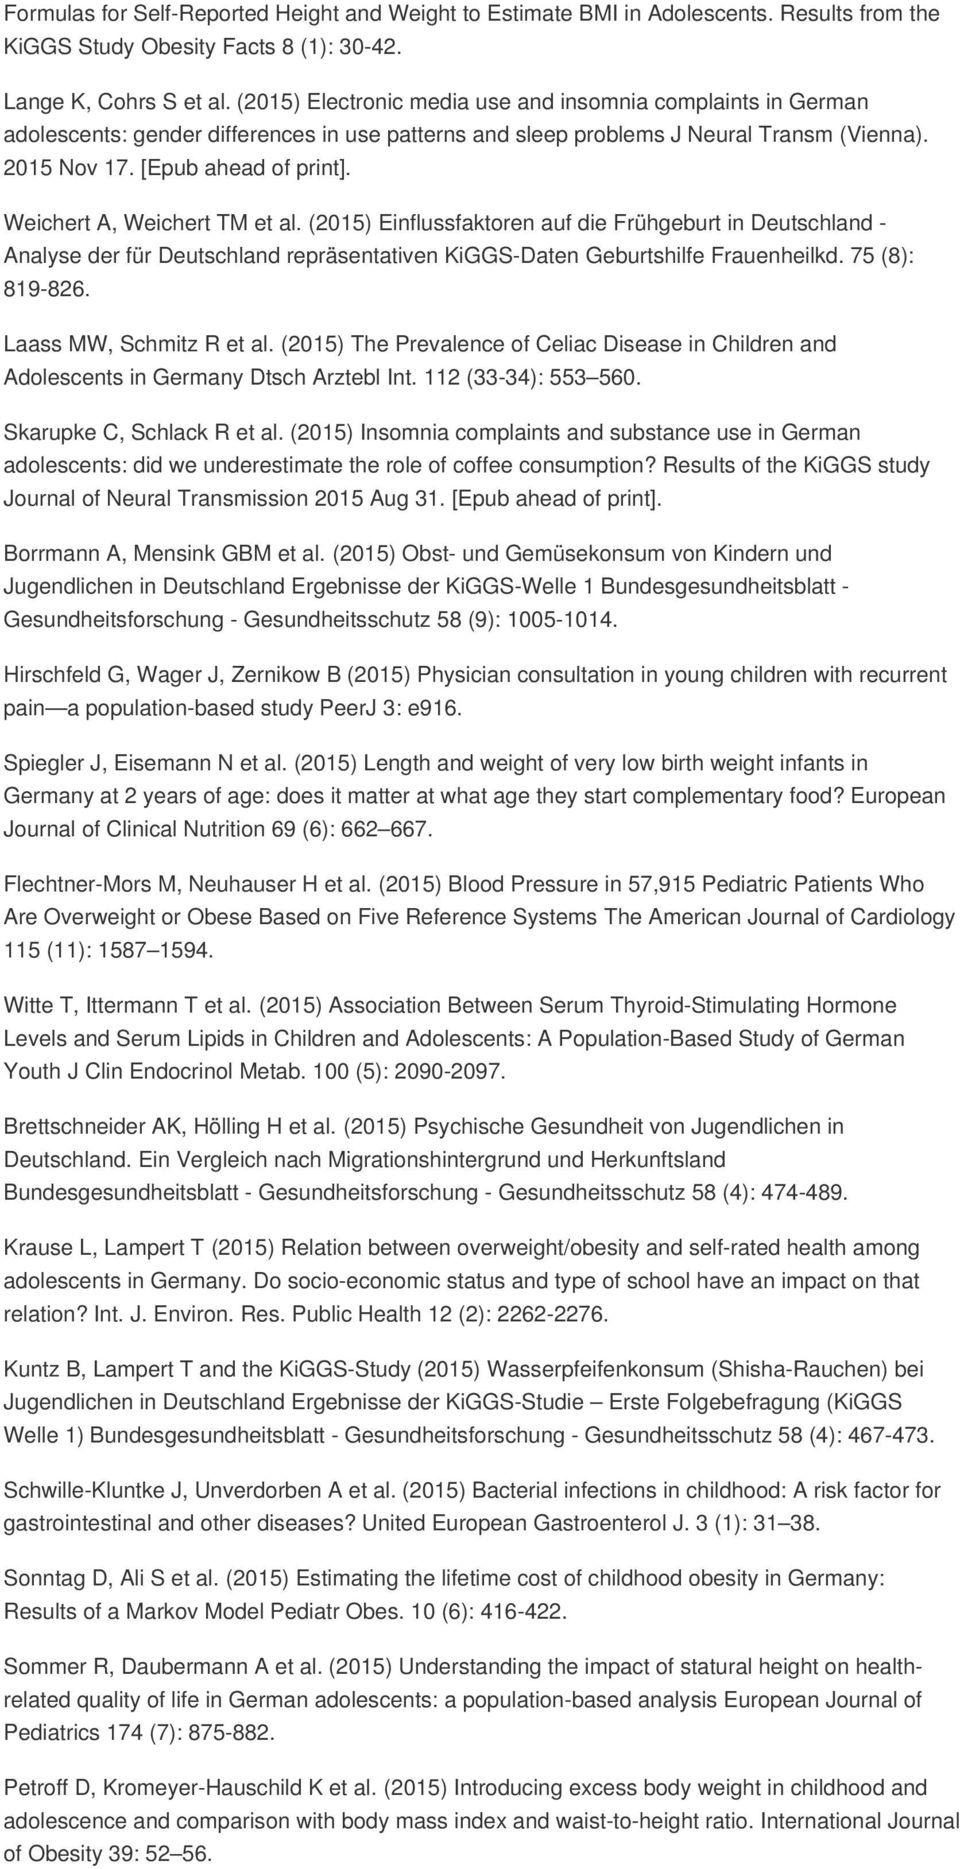 Weichert A, Weichert TM et al. (2015) Einflussfaktoren auf die Frühgeburt in Deutschland - Analyse der für Deutschland repräsentativen KiGGS-Daten Geburtshilfe Frauenheilkd. 75 (8): 819-826.